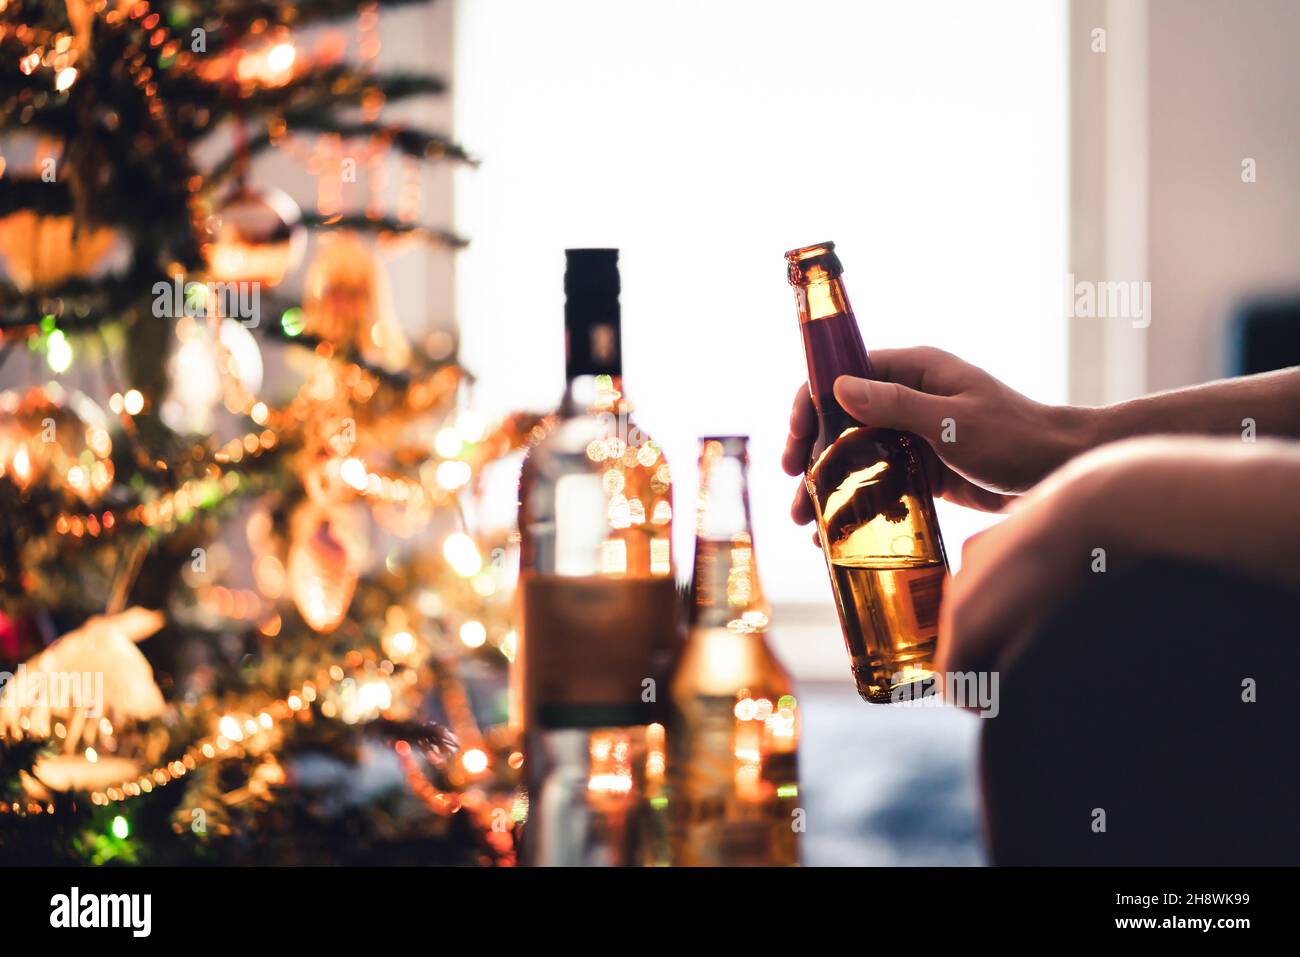 Weihnachtsfeier mit Alkoholflaschen. Neujahr. Bier, Wein und Wodka. Festlicher Weihnachtsbaum. Alkoholismus und Alkoholproblem Konzept. Stockfoto